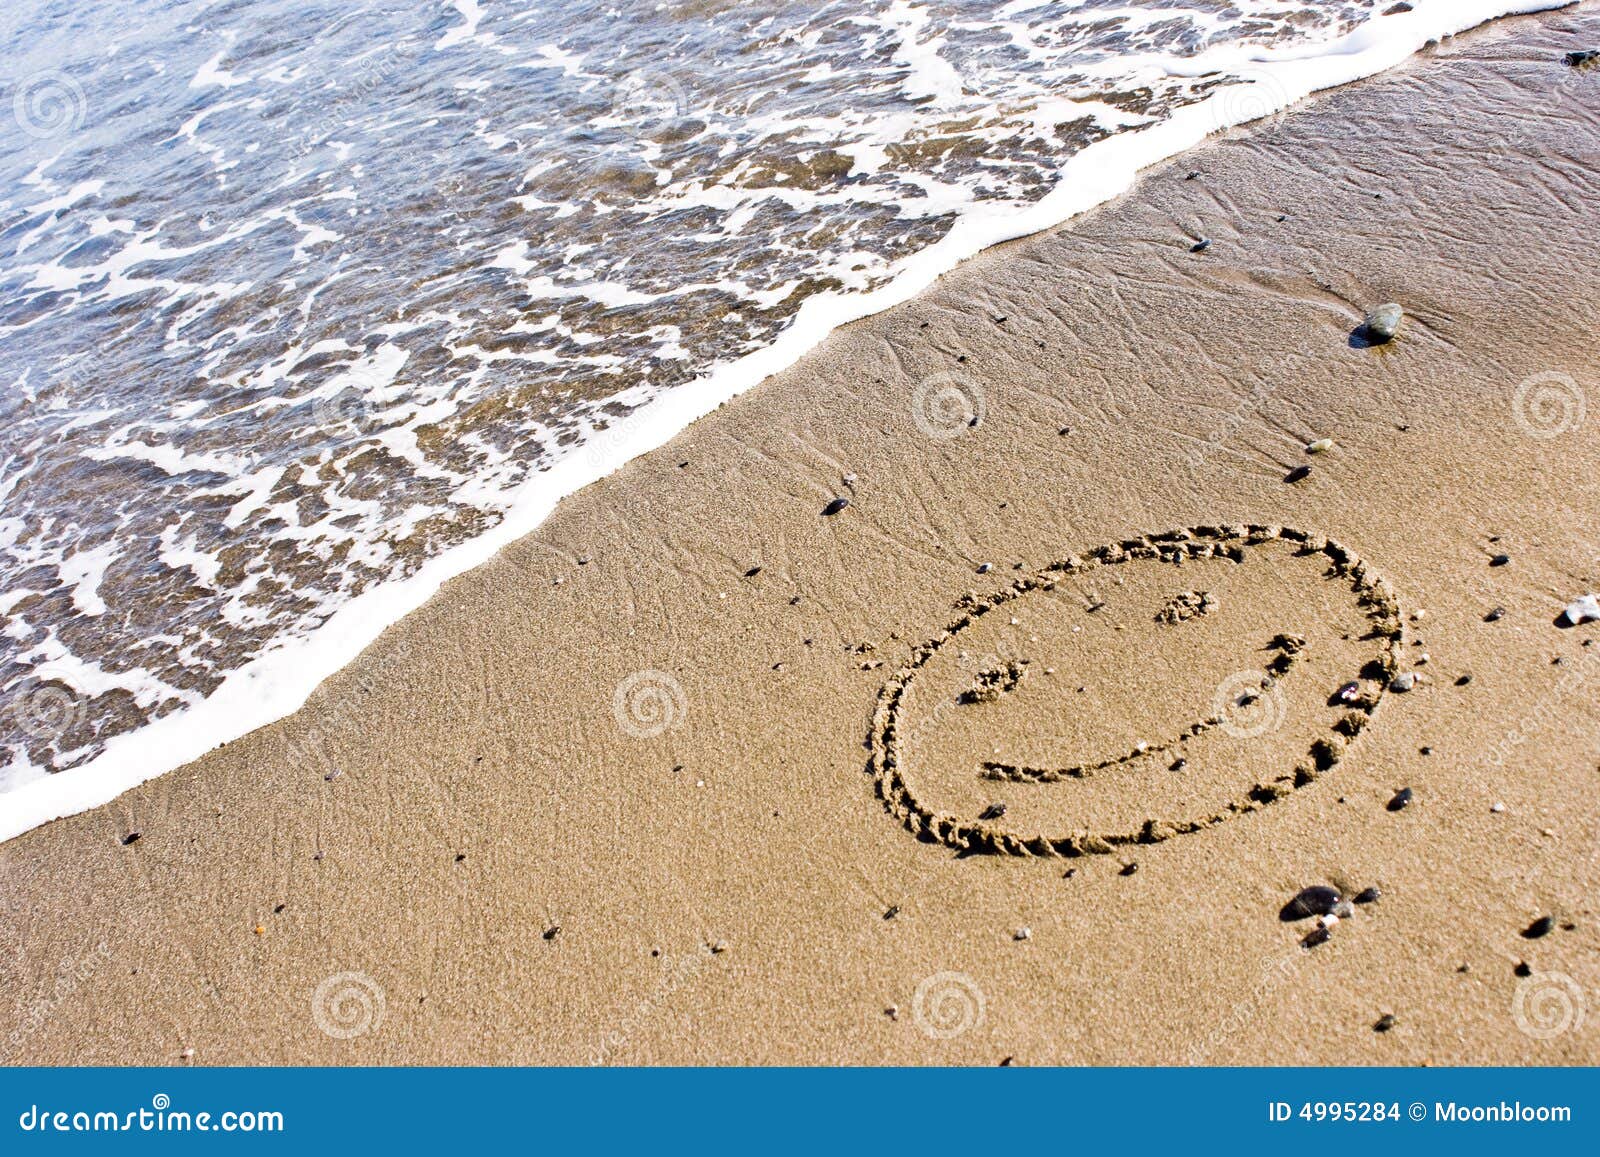 Jogo Engraçado Da Menina Enterrado Em óculos De Sol De Sorriso Da Areia Da  Praia Foto de Stock - Imagem de sunglasses, ensolarado: 35454010